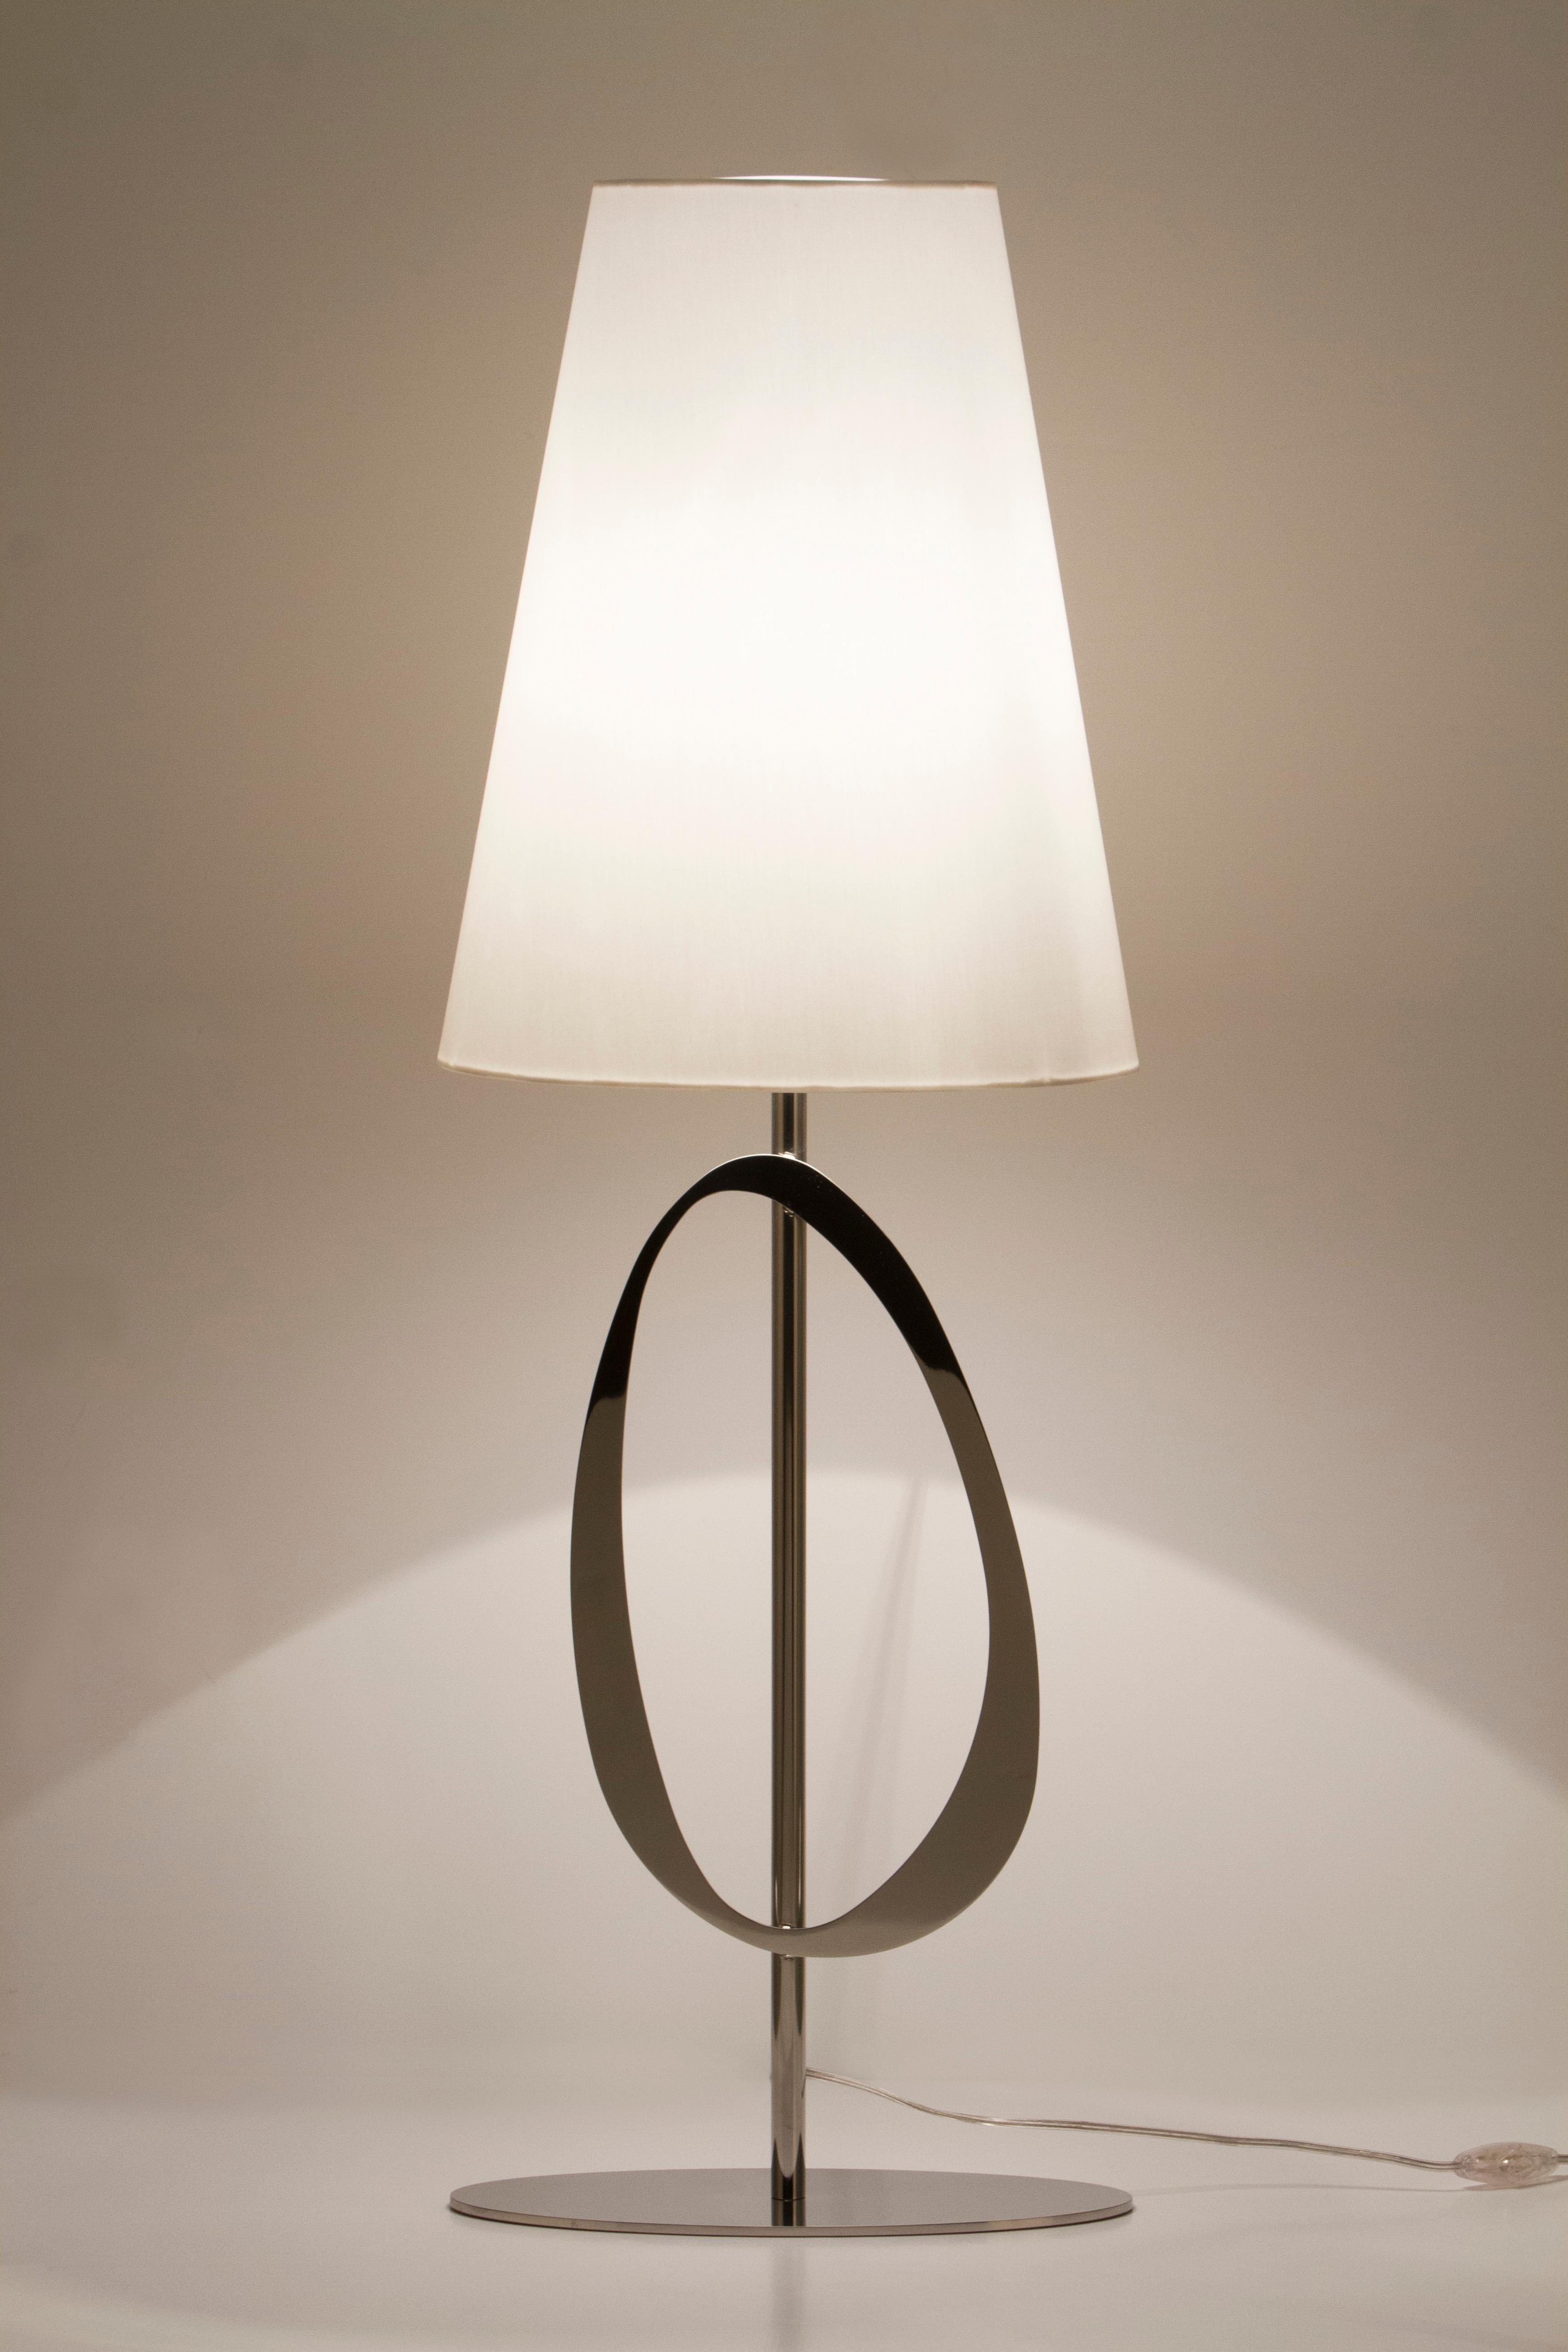 2er-Set Robin Tischlampen, Modern Collection'S, handgefertigt in Portugal - Europa von GF Modern.

Die luxuriöse moderne Tischleuchte Robin schafft ein unterschwelliges Ambiente für außergewöhnliches Wohnen. 
Das organische Detail des Edelstahls